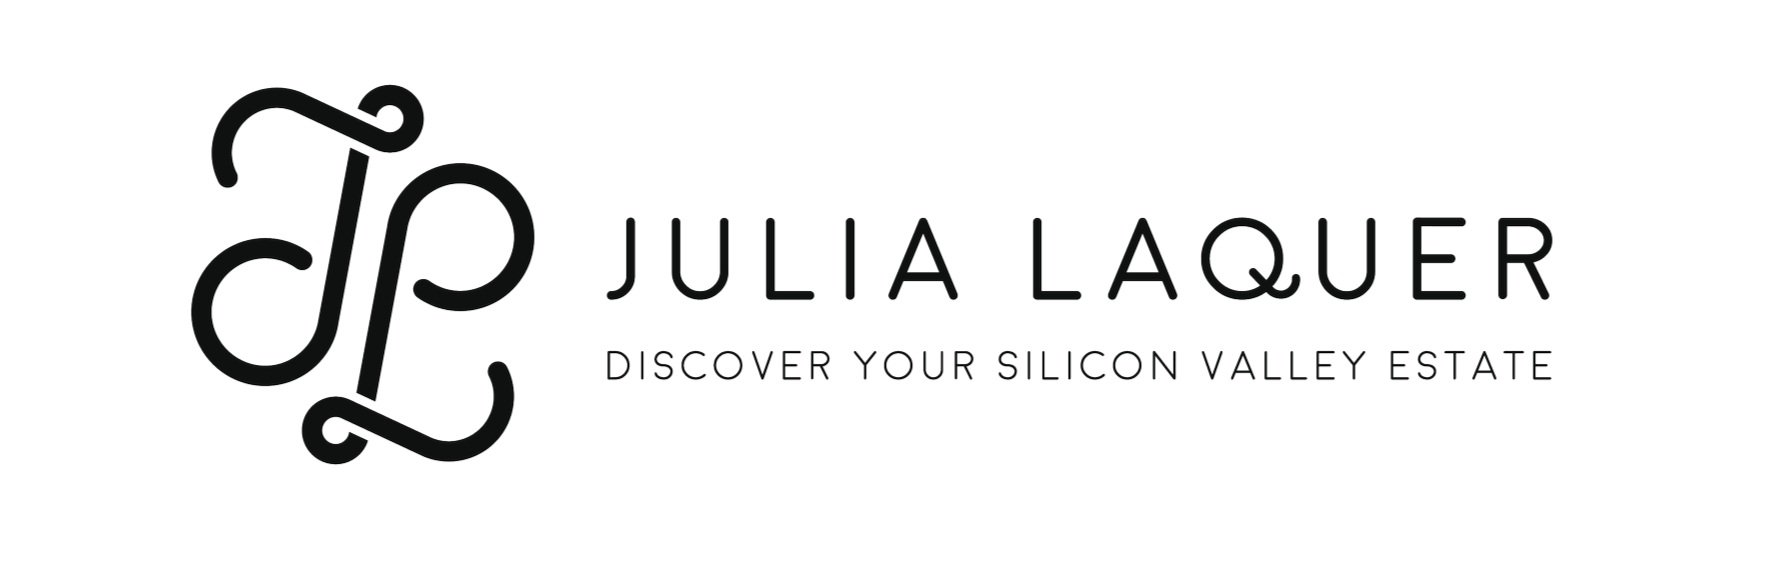 JuliaLaquer_Logos-15.jpg